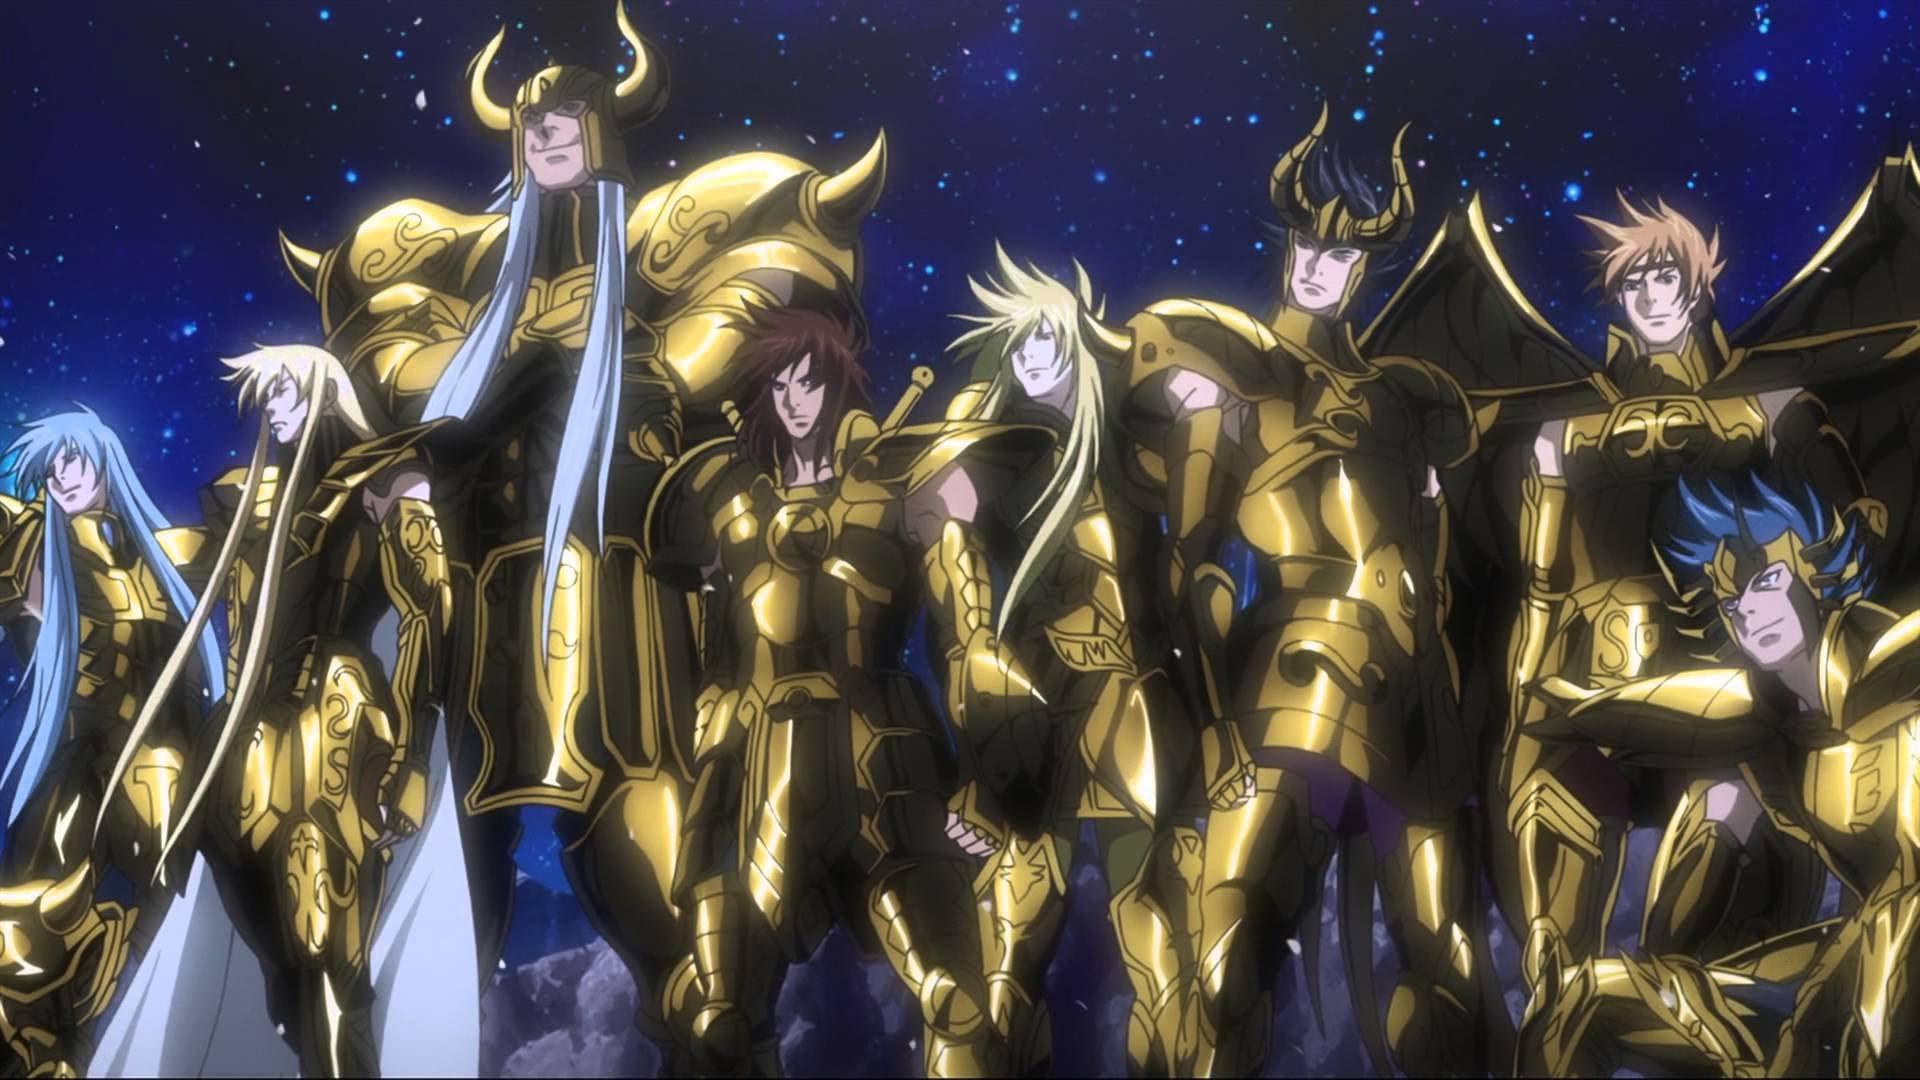 Os Cavaleiros do Zodíaco Seiya+